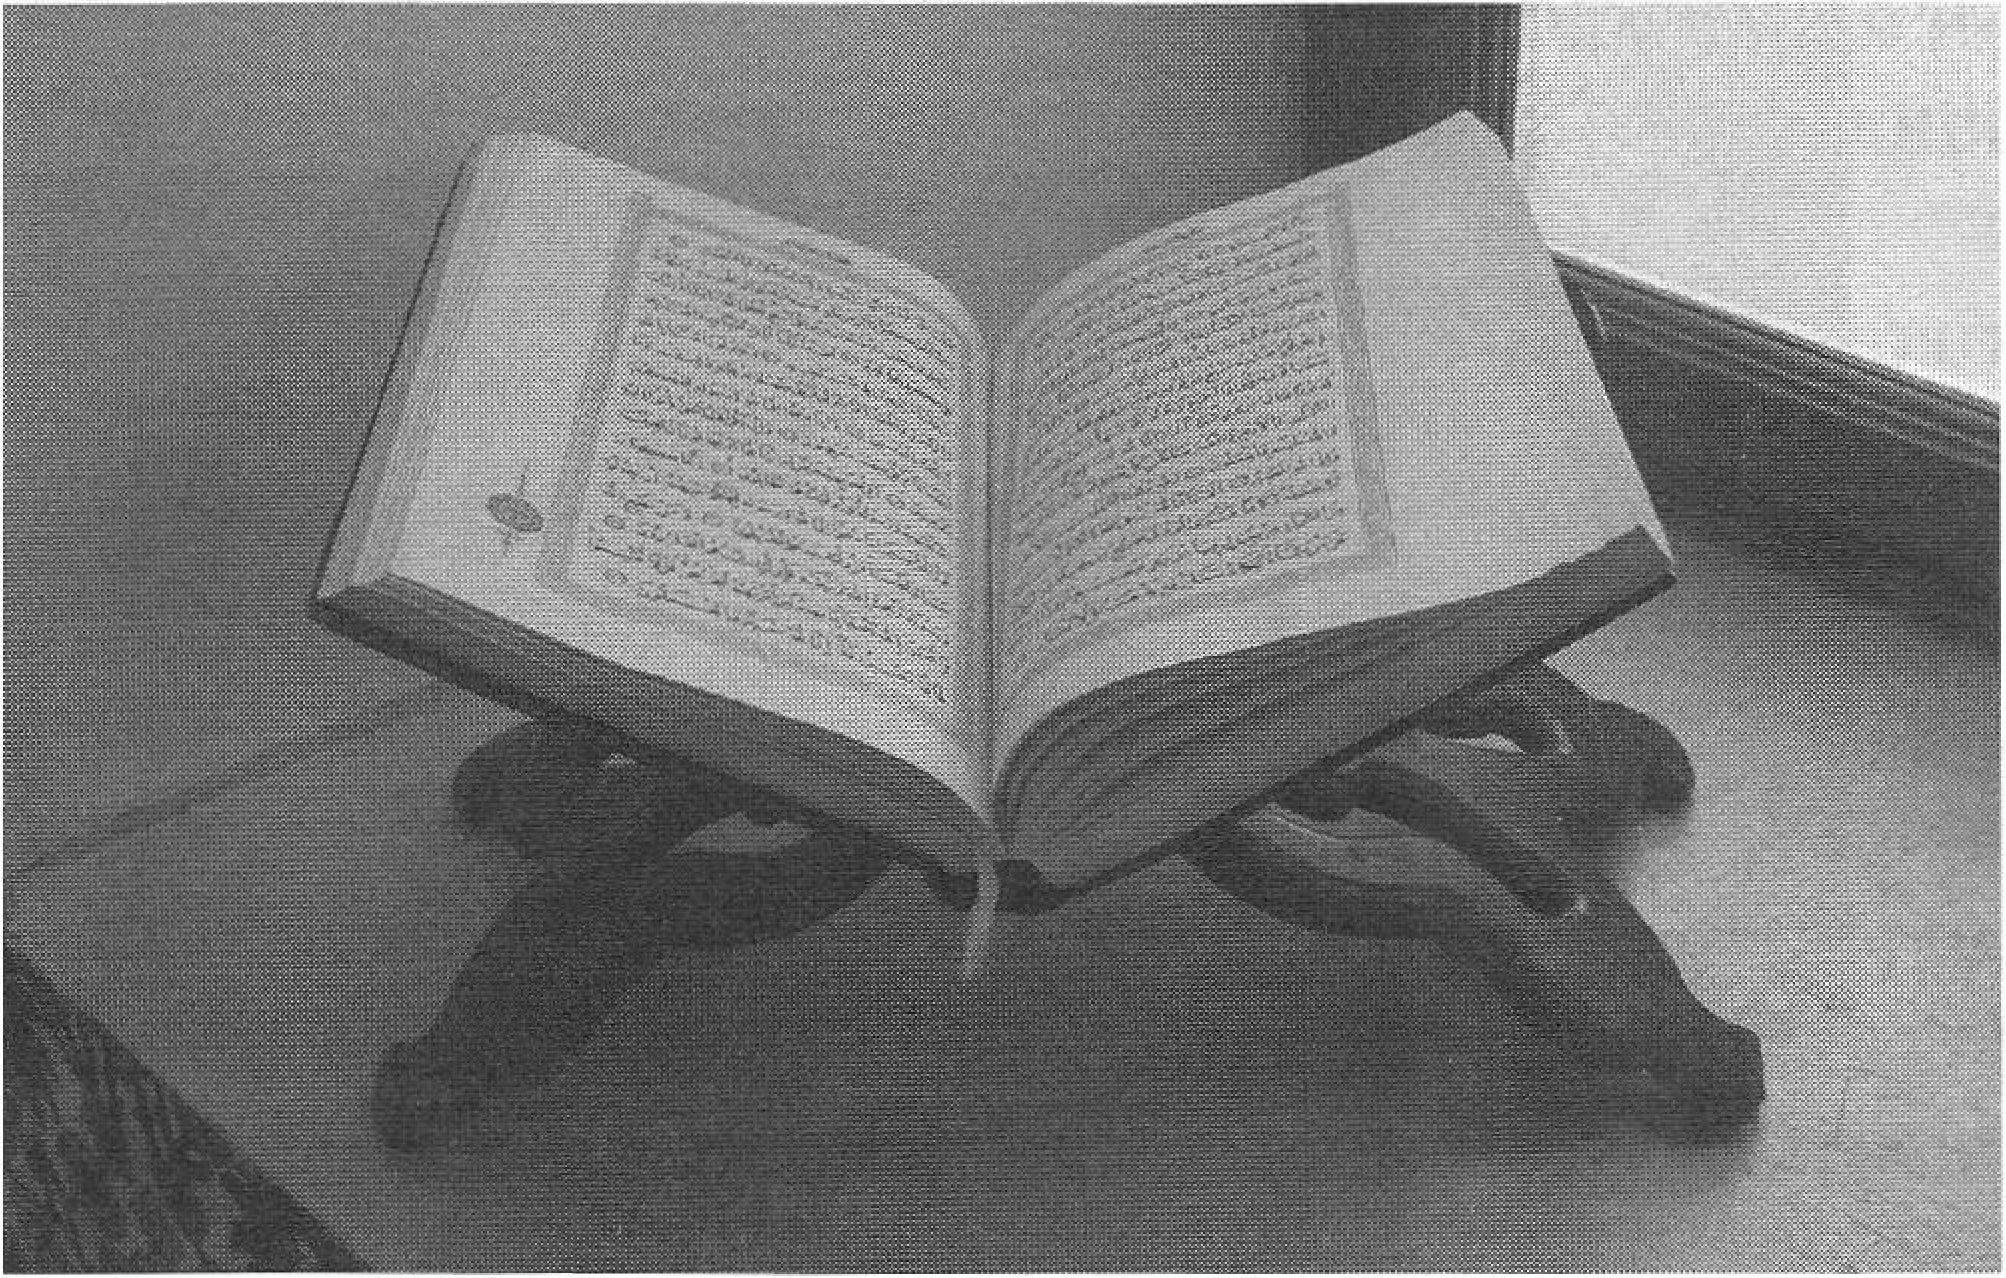 Подставка для Корана традиционной крымской формы. Совр. фото